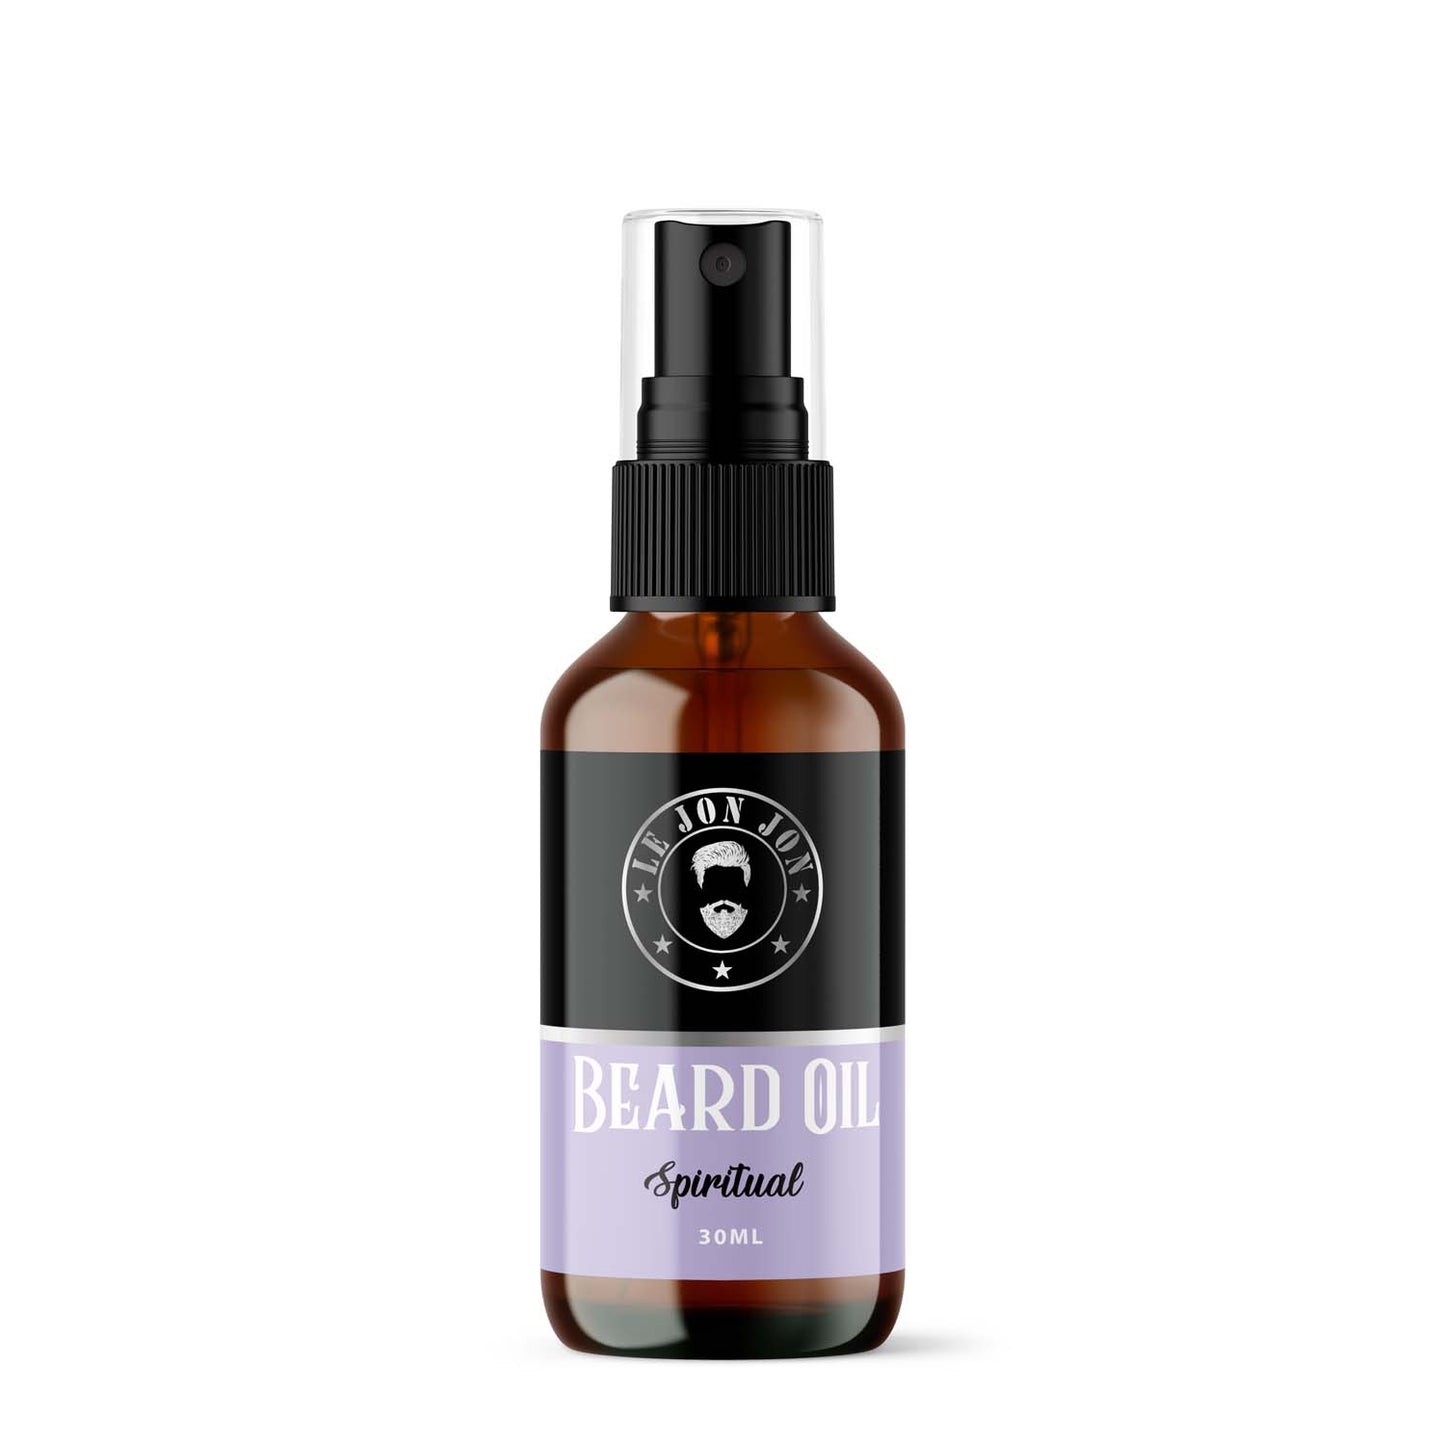 Beard oil spiritual scented 30ml